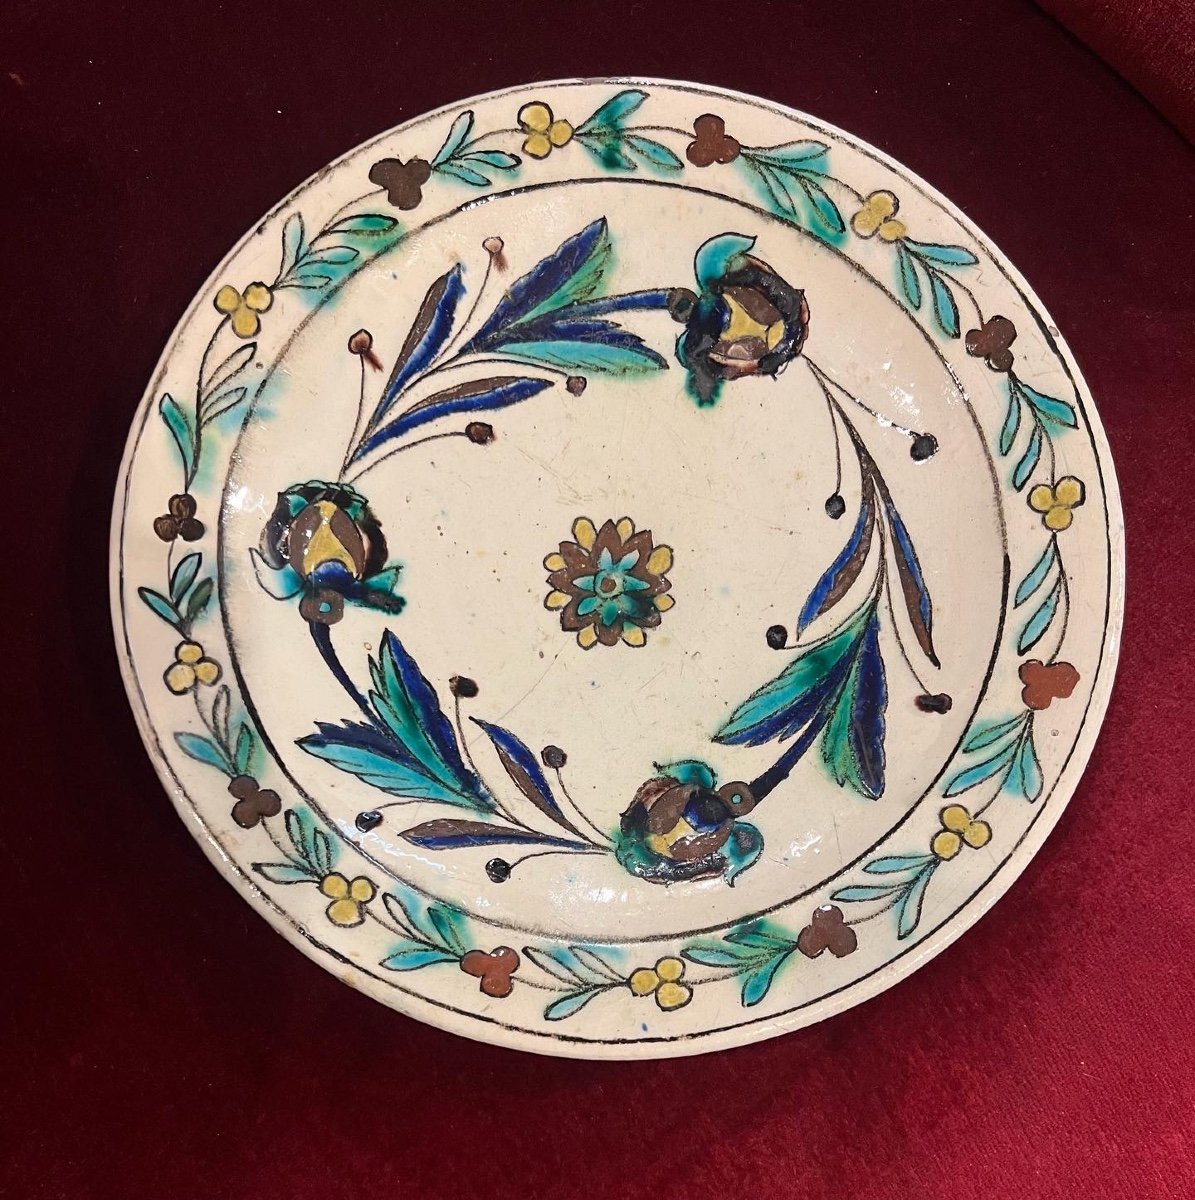 Ottoman Ceramic Plate From Kutahya Around 1850